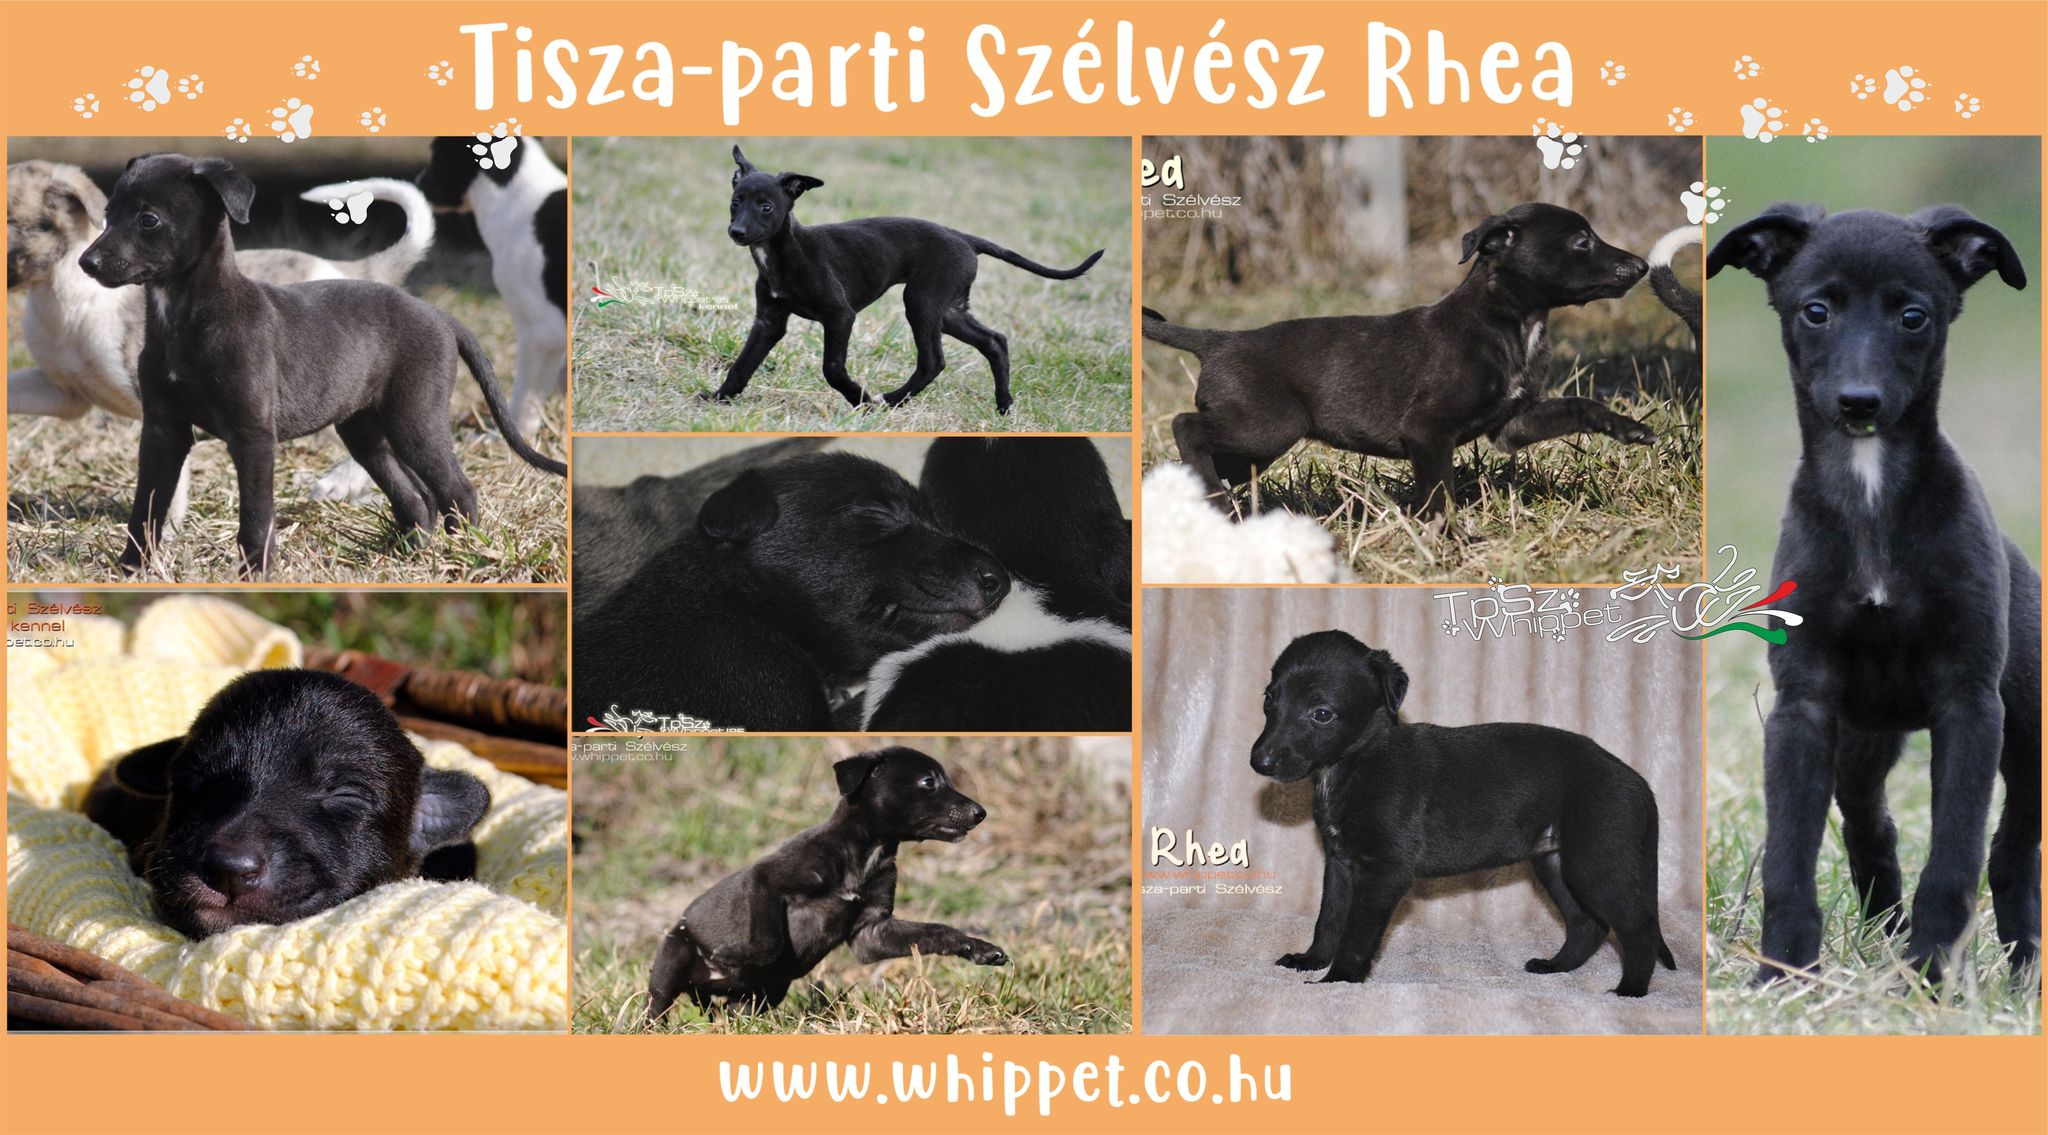 Tisza-parti Szélvész Rhea whippet puppy for sale